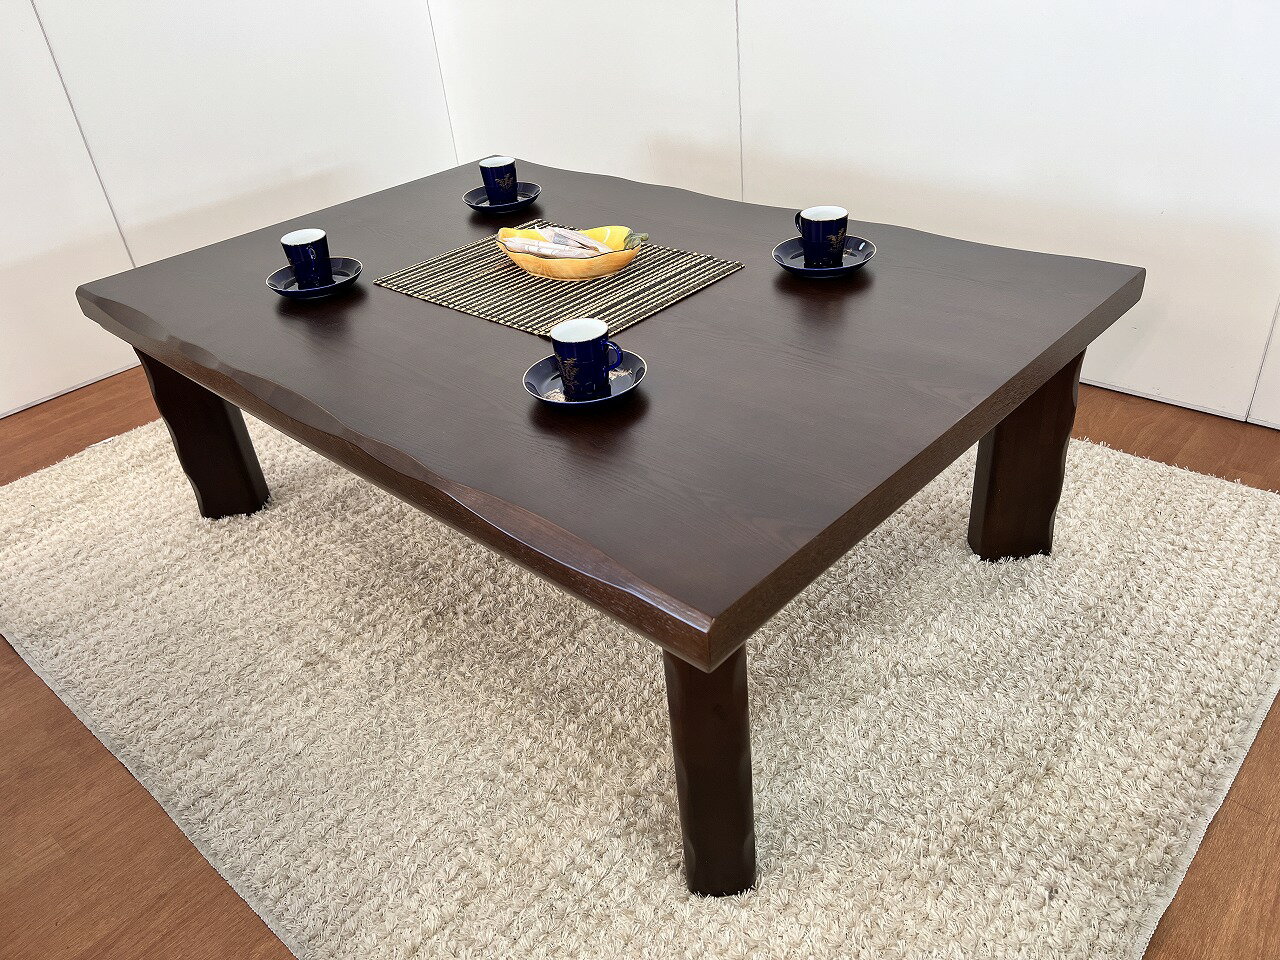 【座卓】「飛鳥-120」リビングテーブル ダイニングテーブル ローテーブル タモ材 2人〜4人用 木製 座卓 木目 和洋 長方形 食卓 新生活 シンプル